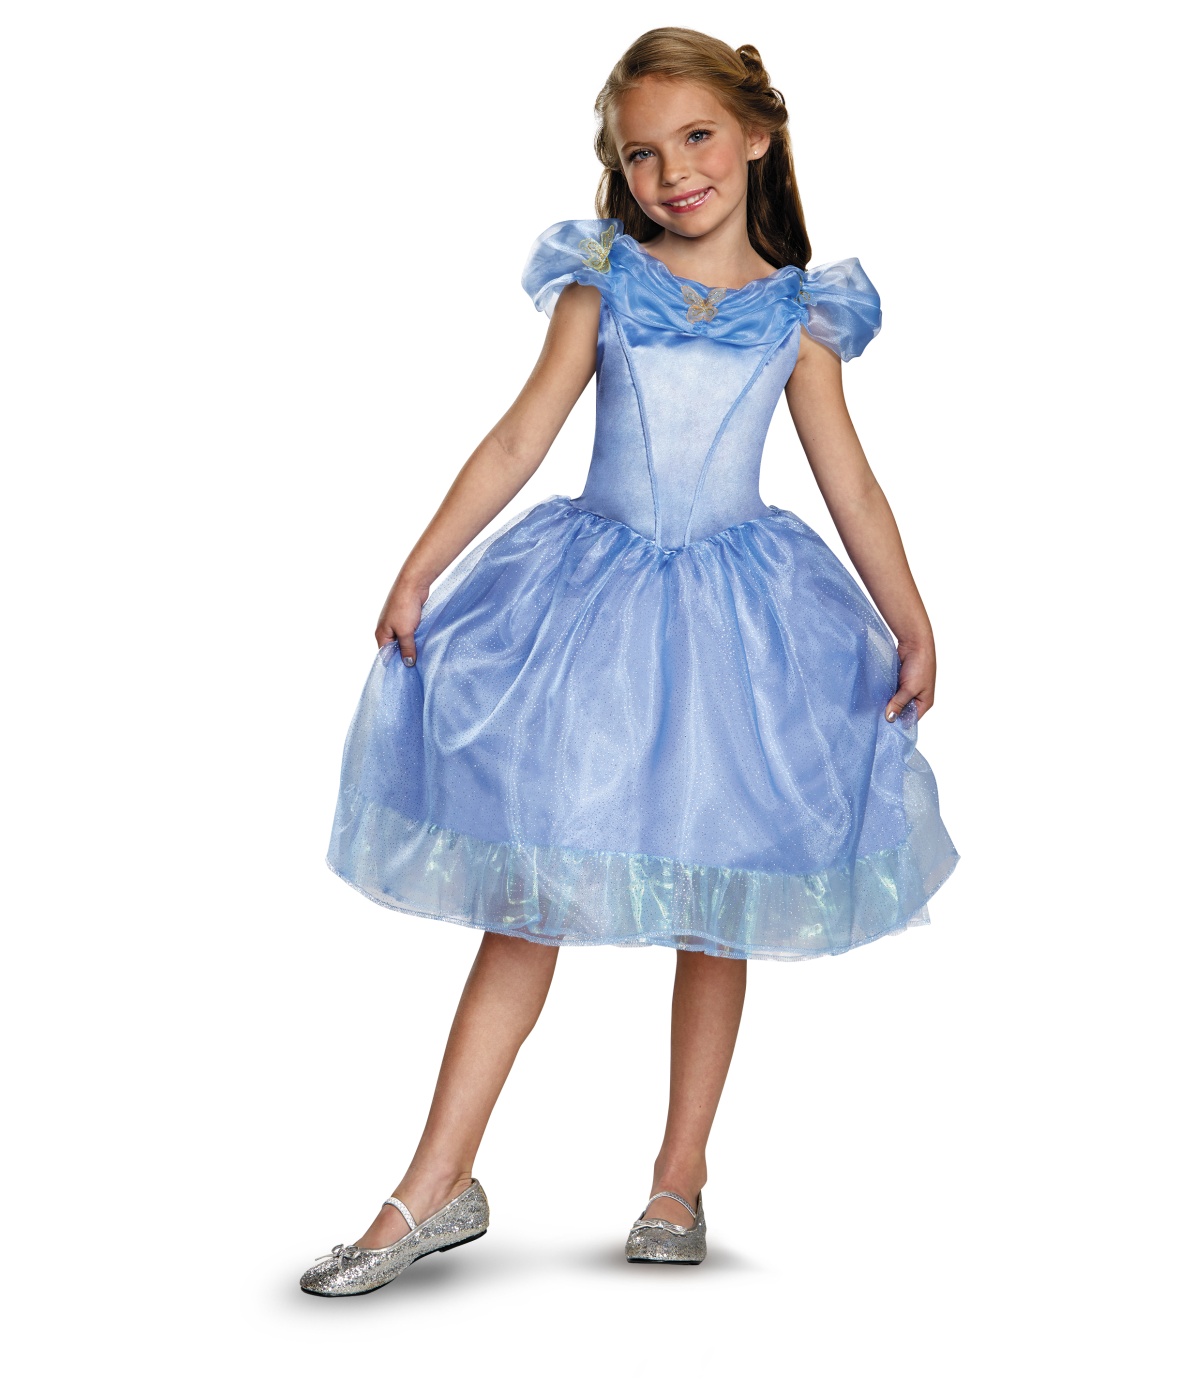  Girls Cinderella Disney Movie Costume